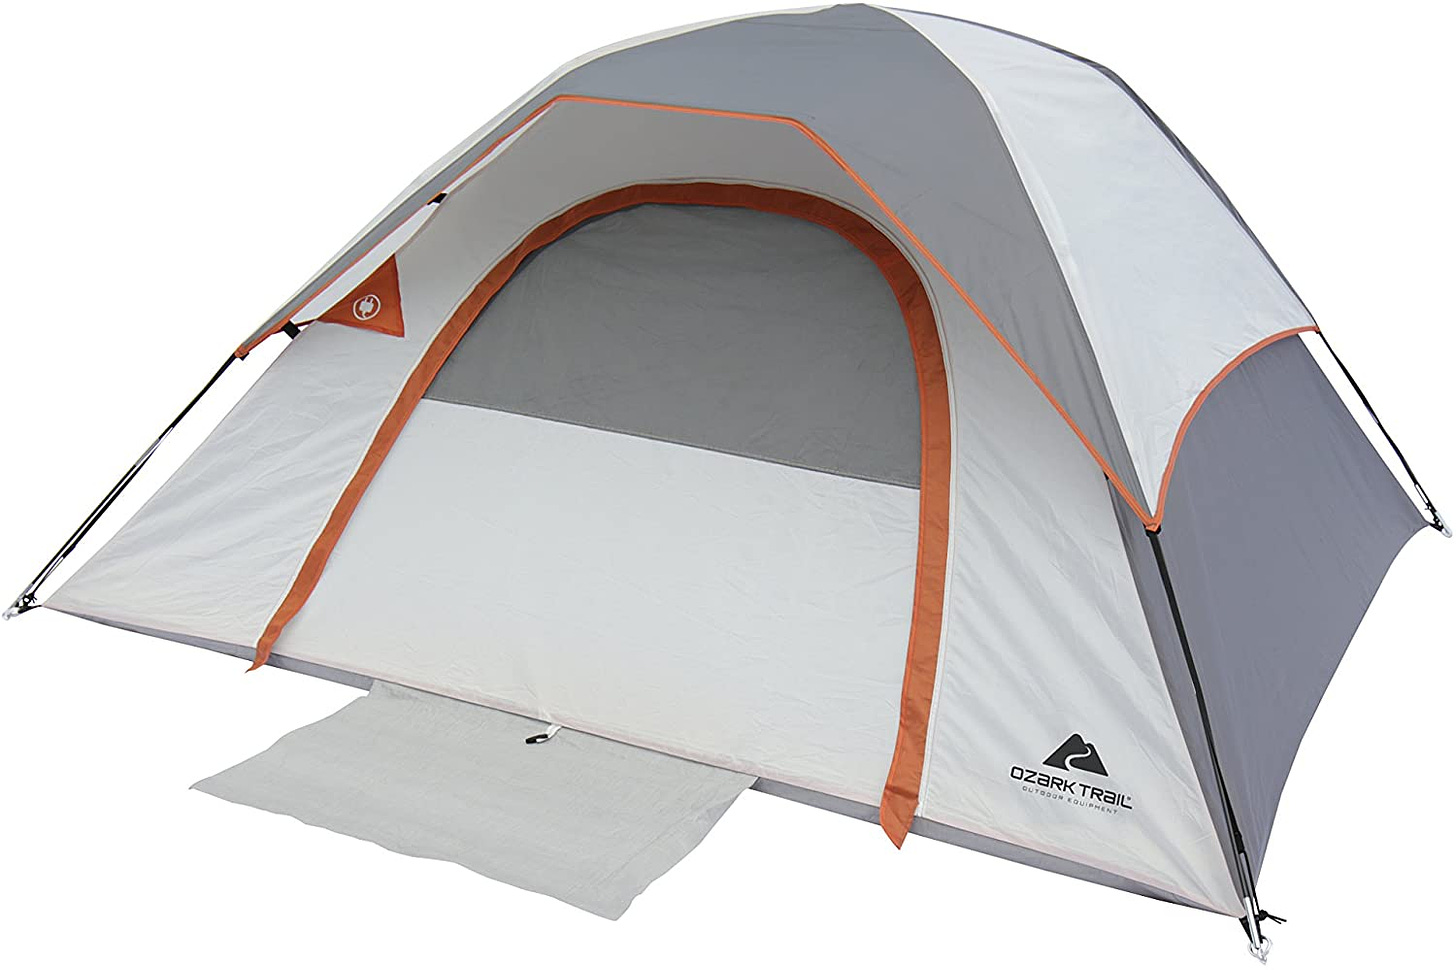 Amazon.com : Ozark Trail, 3 Person Camping Dome Tent : Sports ...